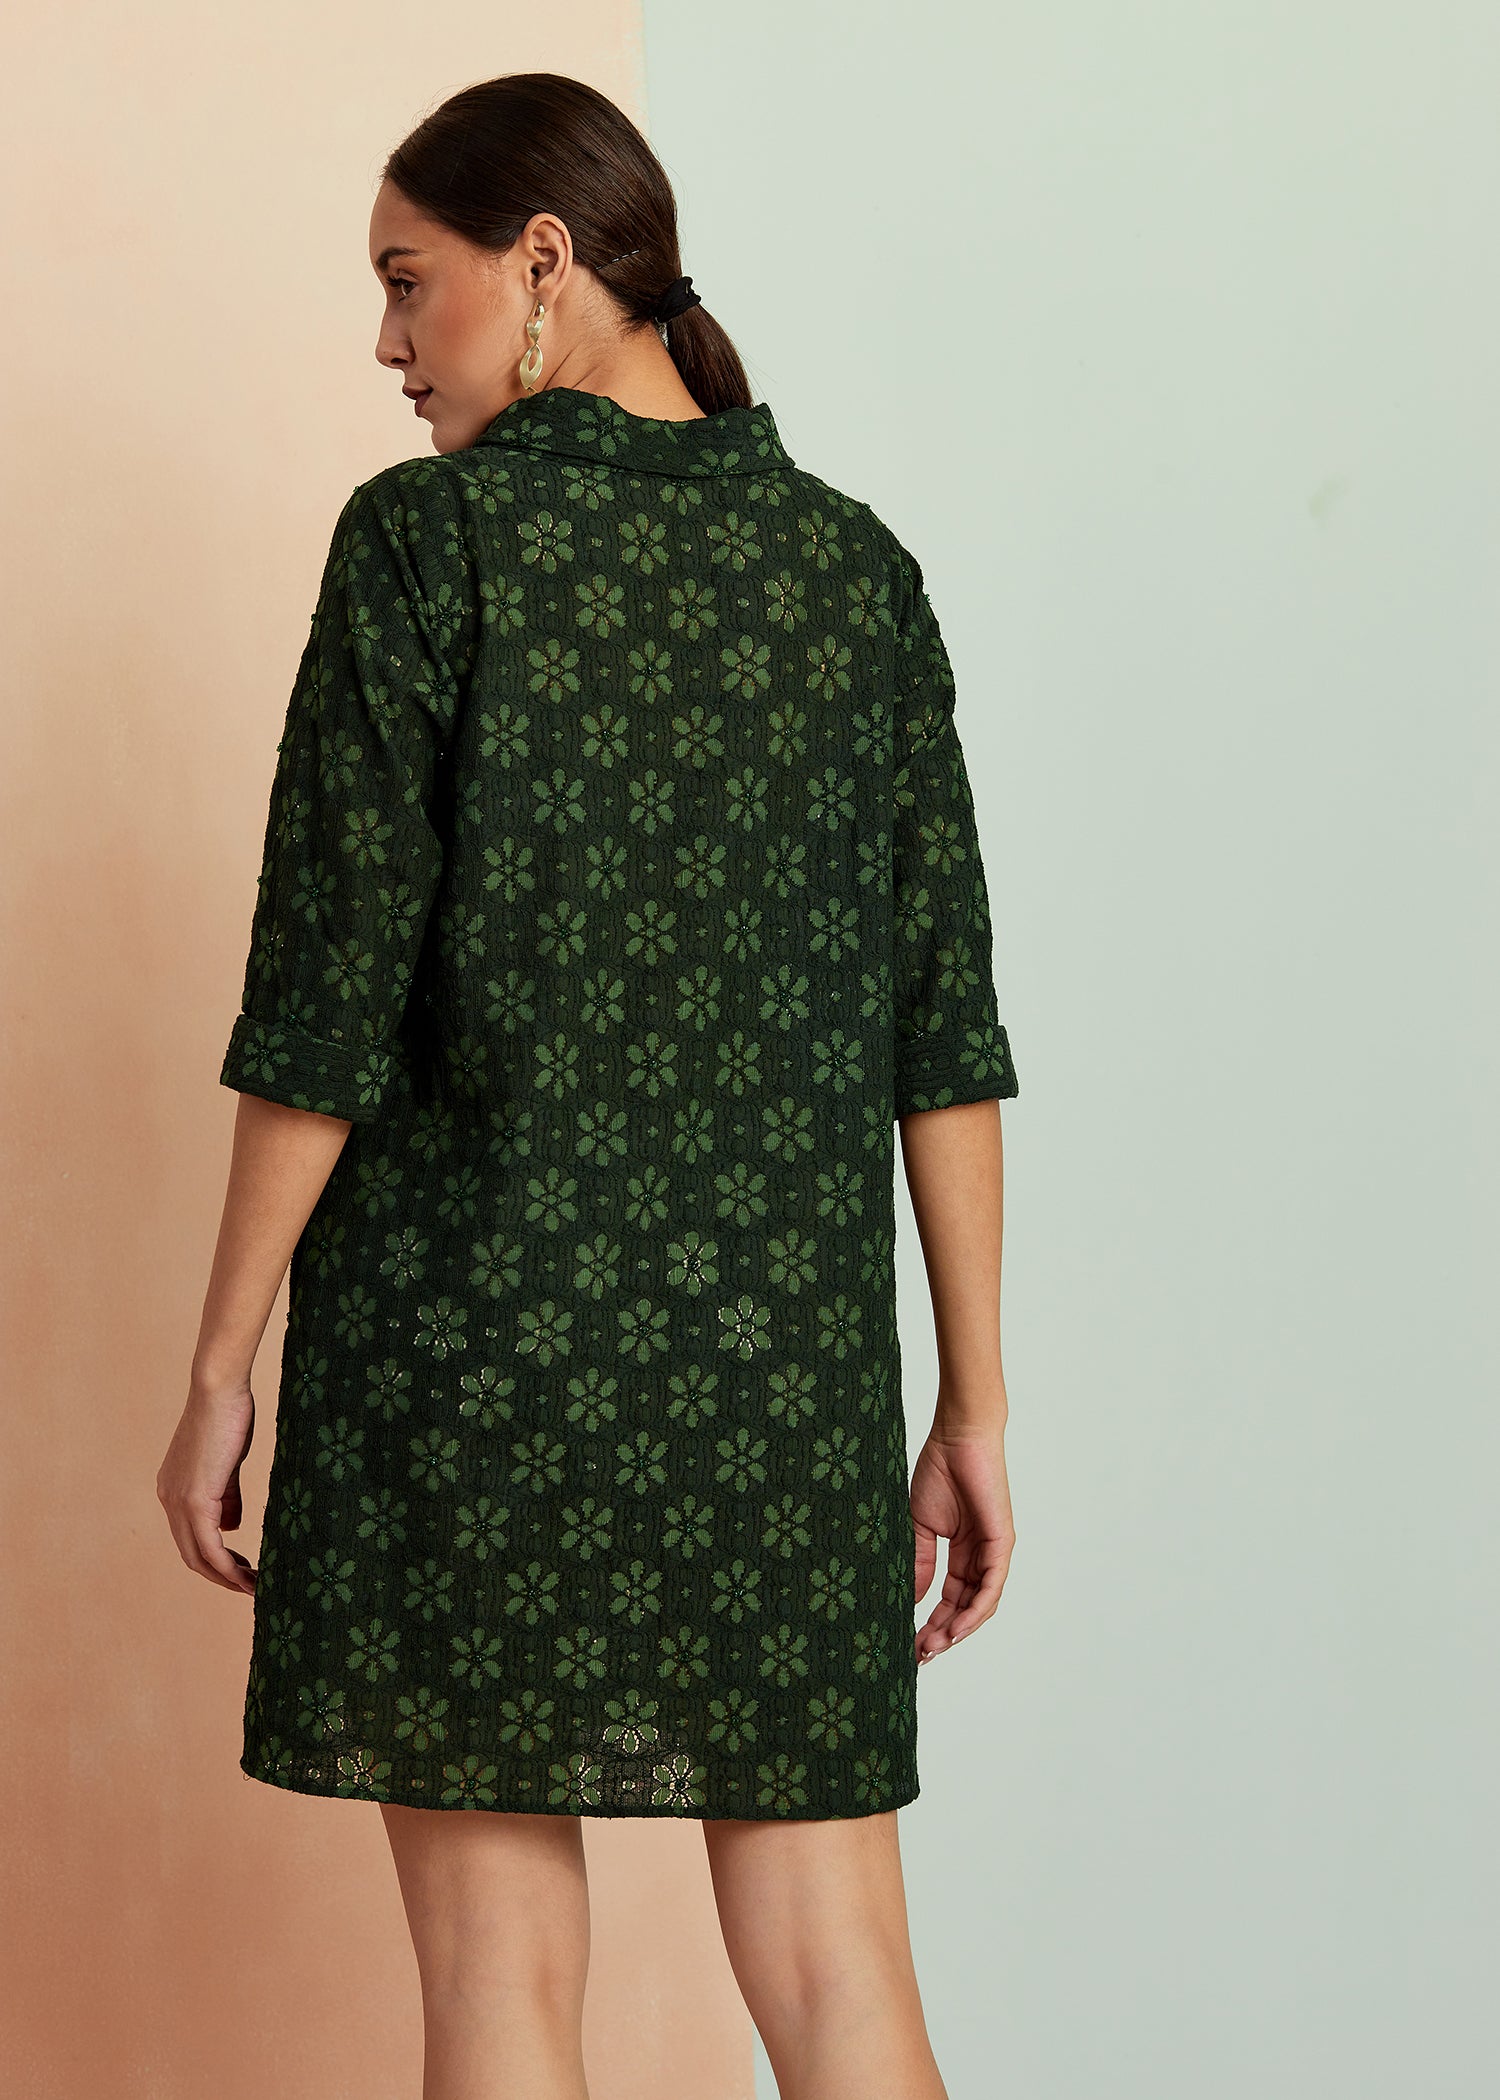 Emerald Green Schiffli Dress